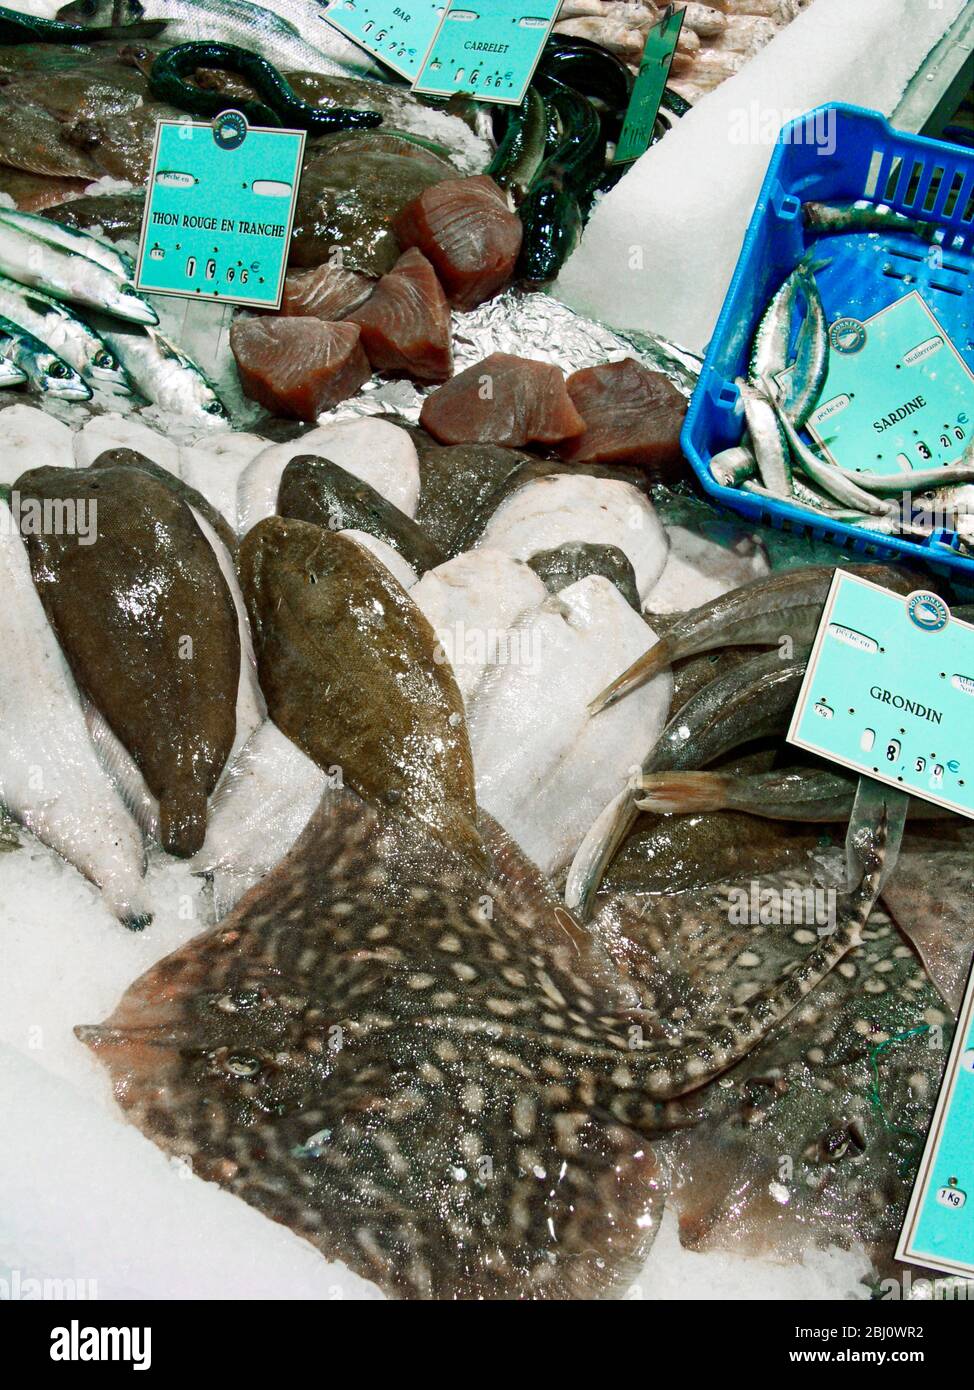 Pesce bagnato su lastra in supermercato francese - Foto Stock